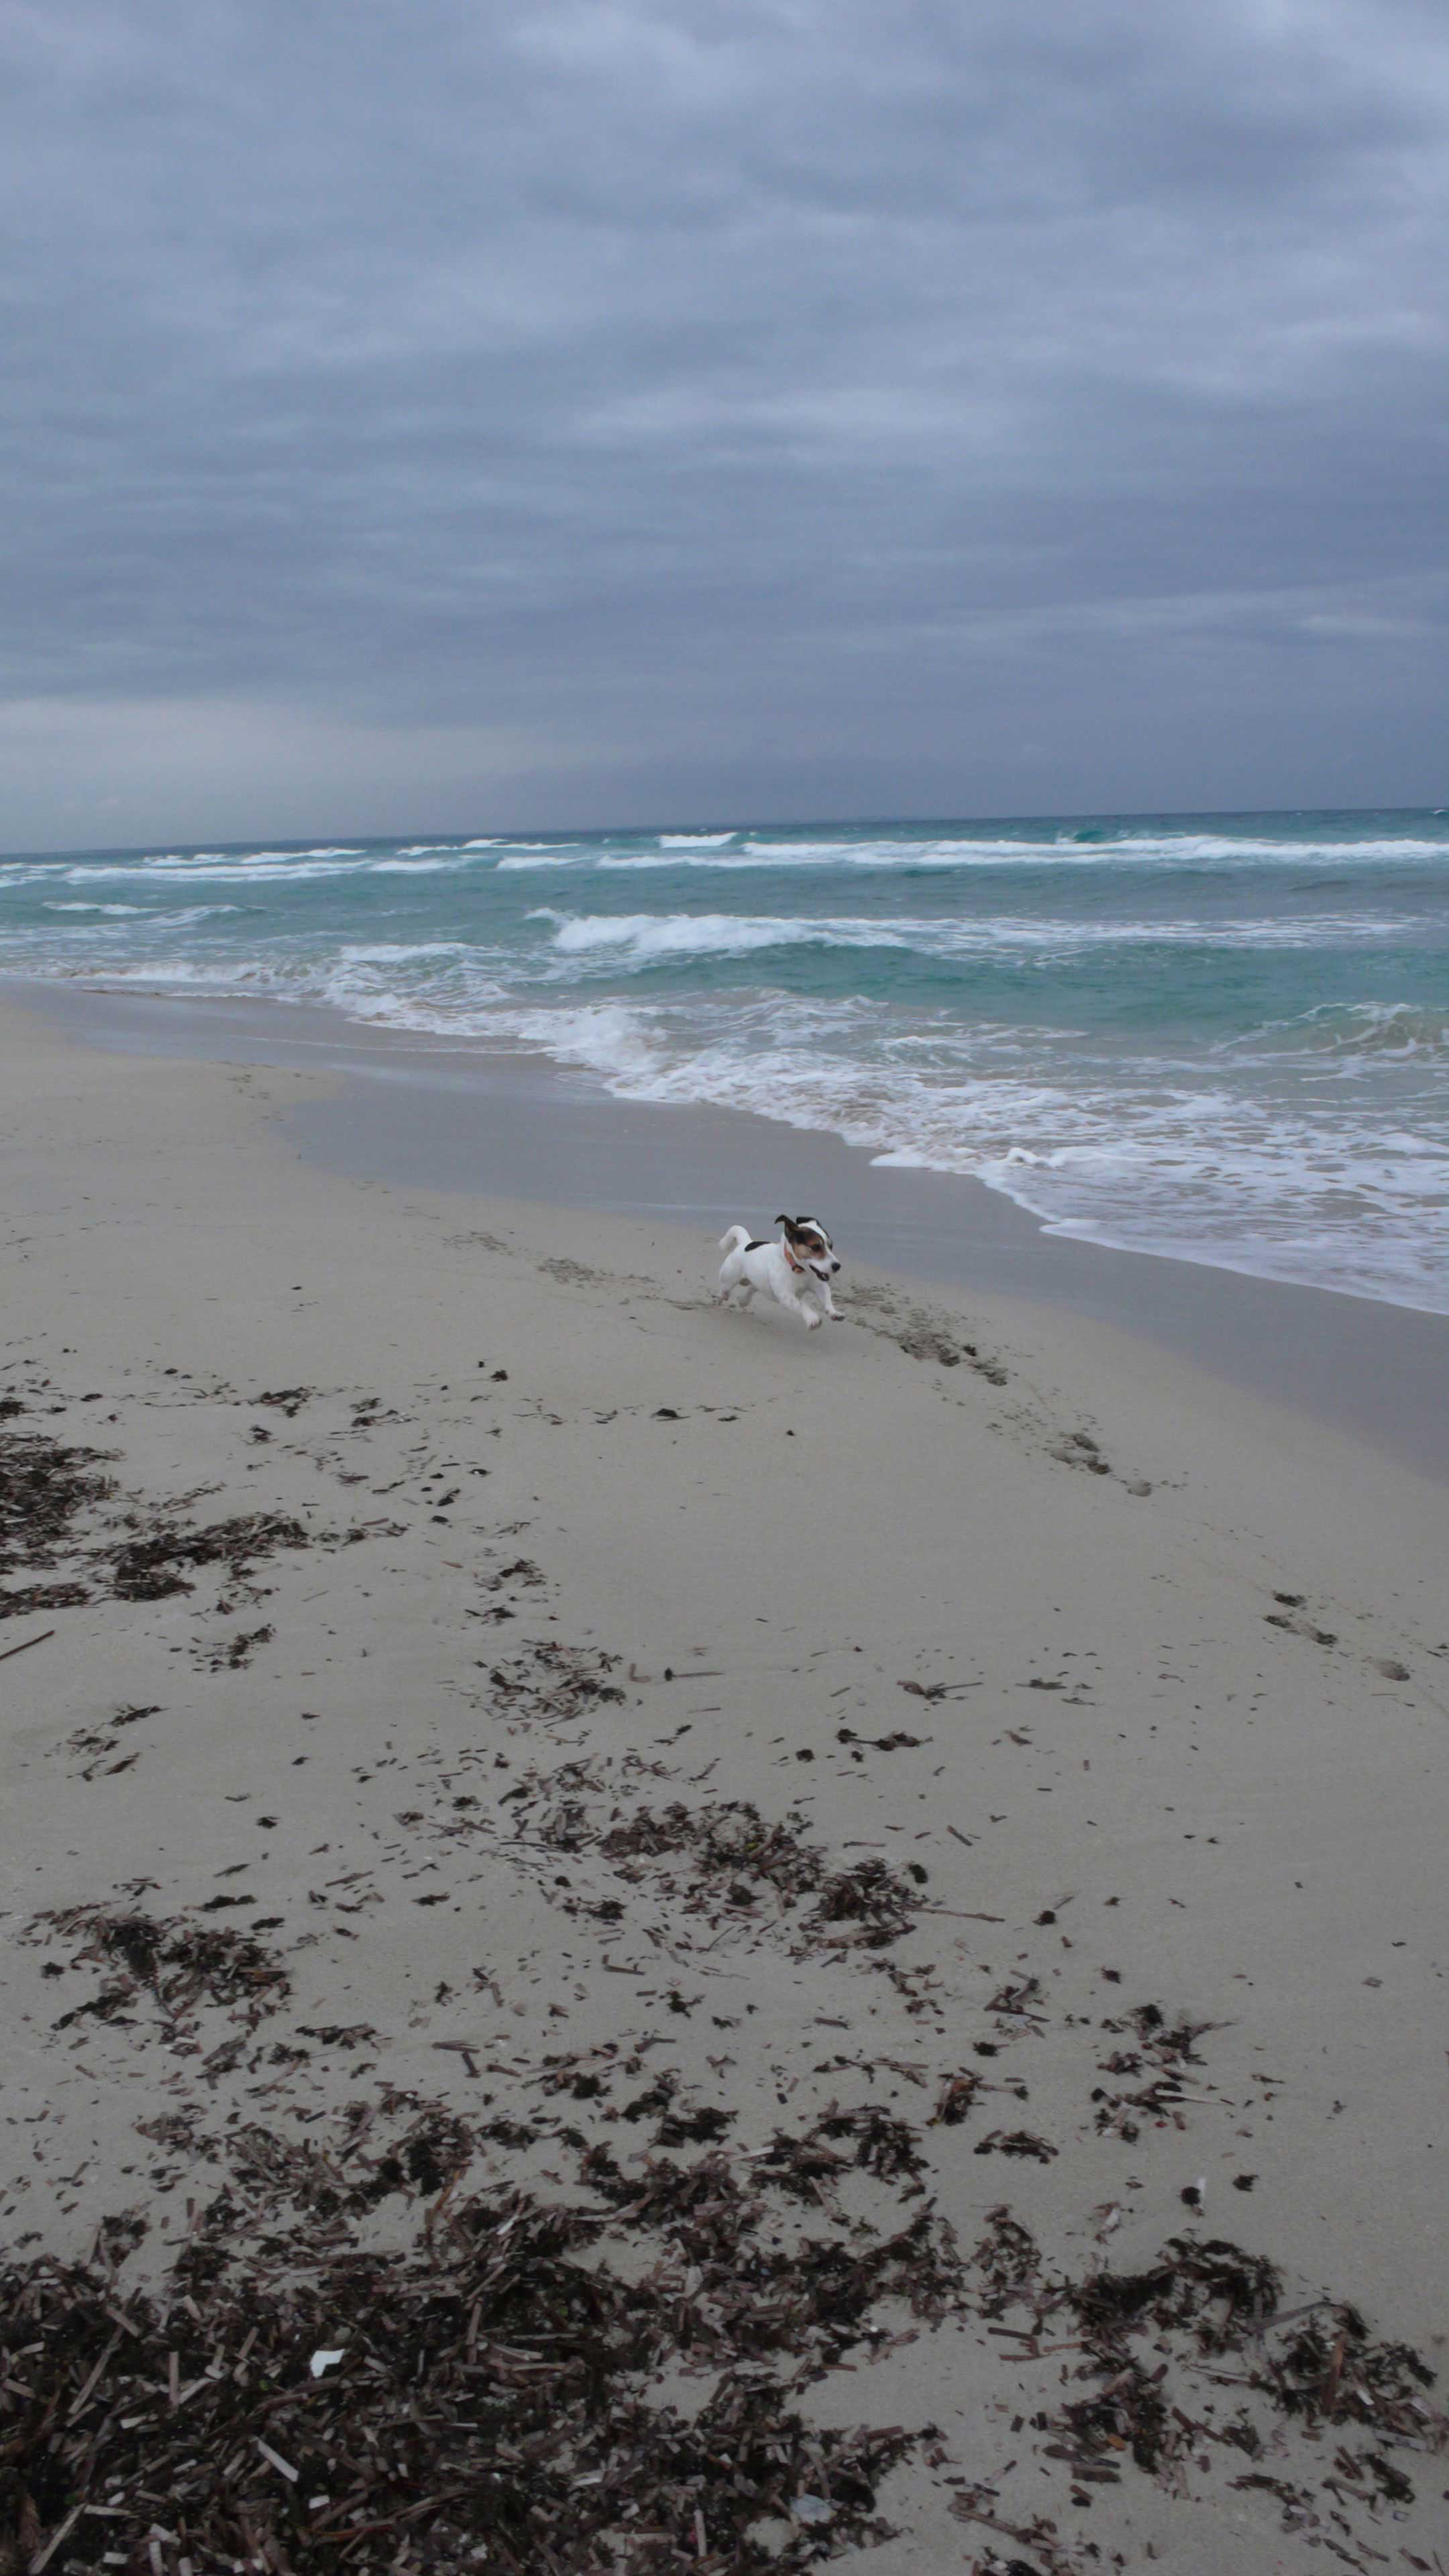 Cane che corre sulla spiaggia